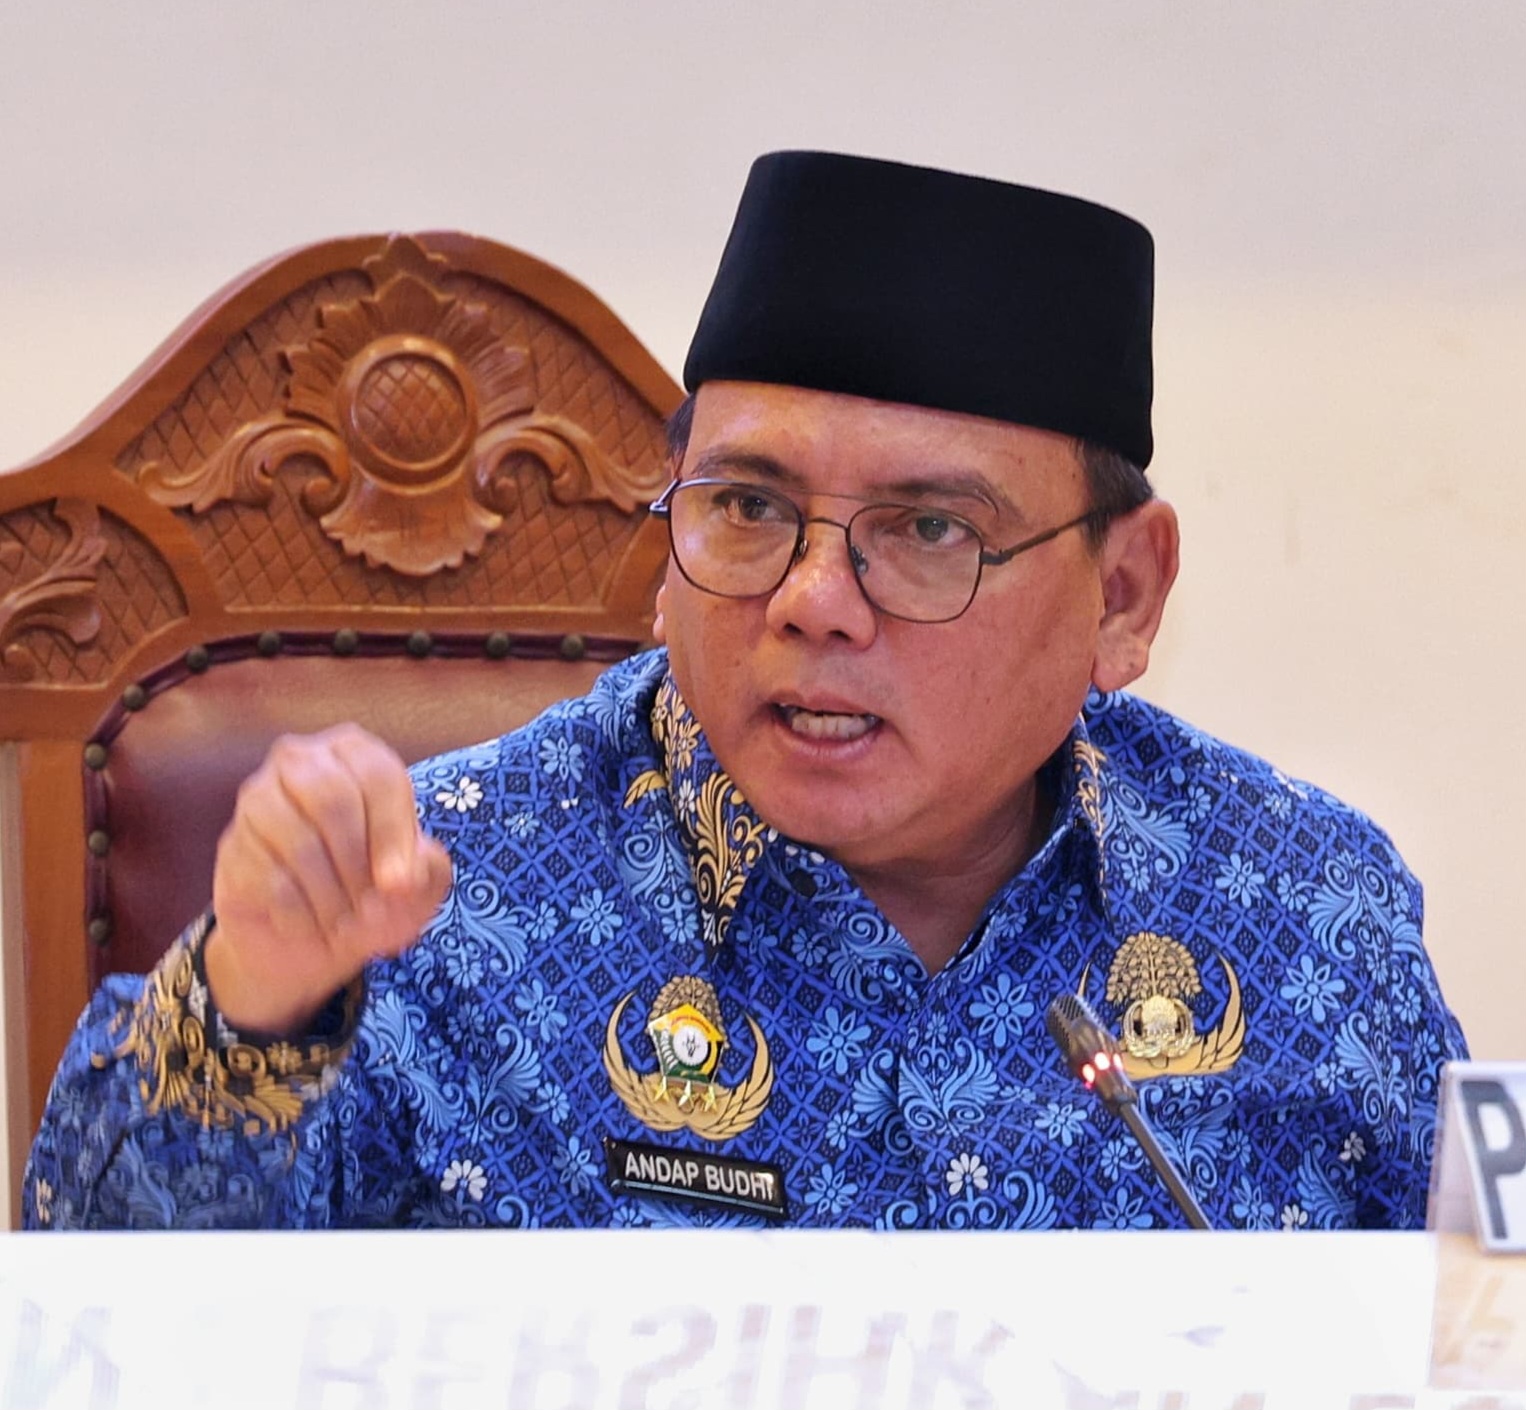 Pasca Lebaran, Inflasi Kolaka Terendah, Baubau Tertinggi, Pj Gubernur: Inflasi Sultra Stabil Terkendali